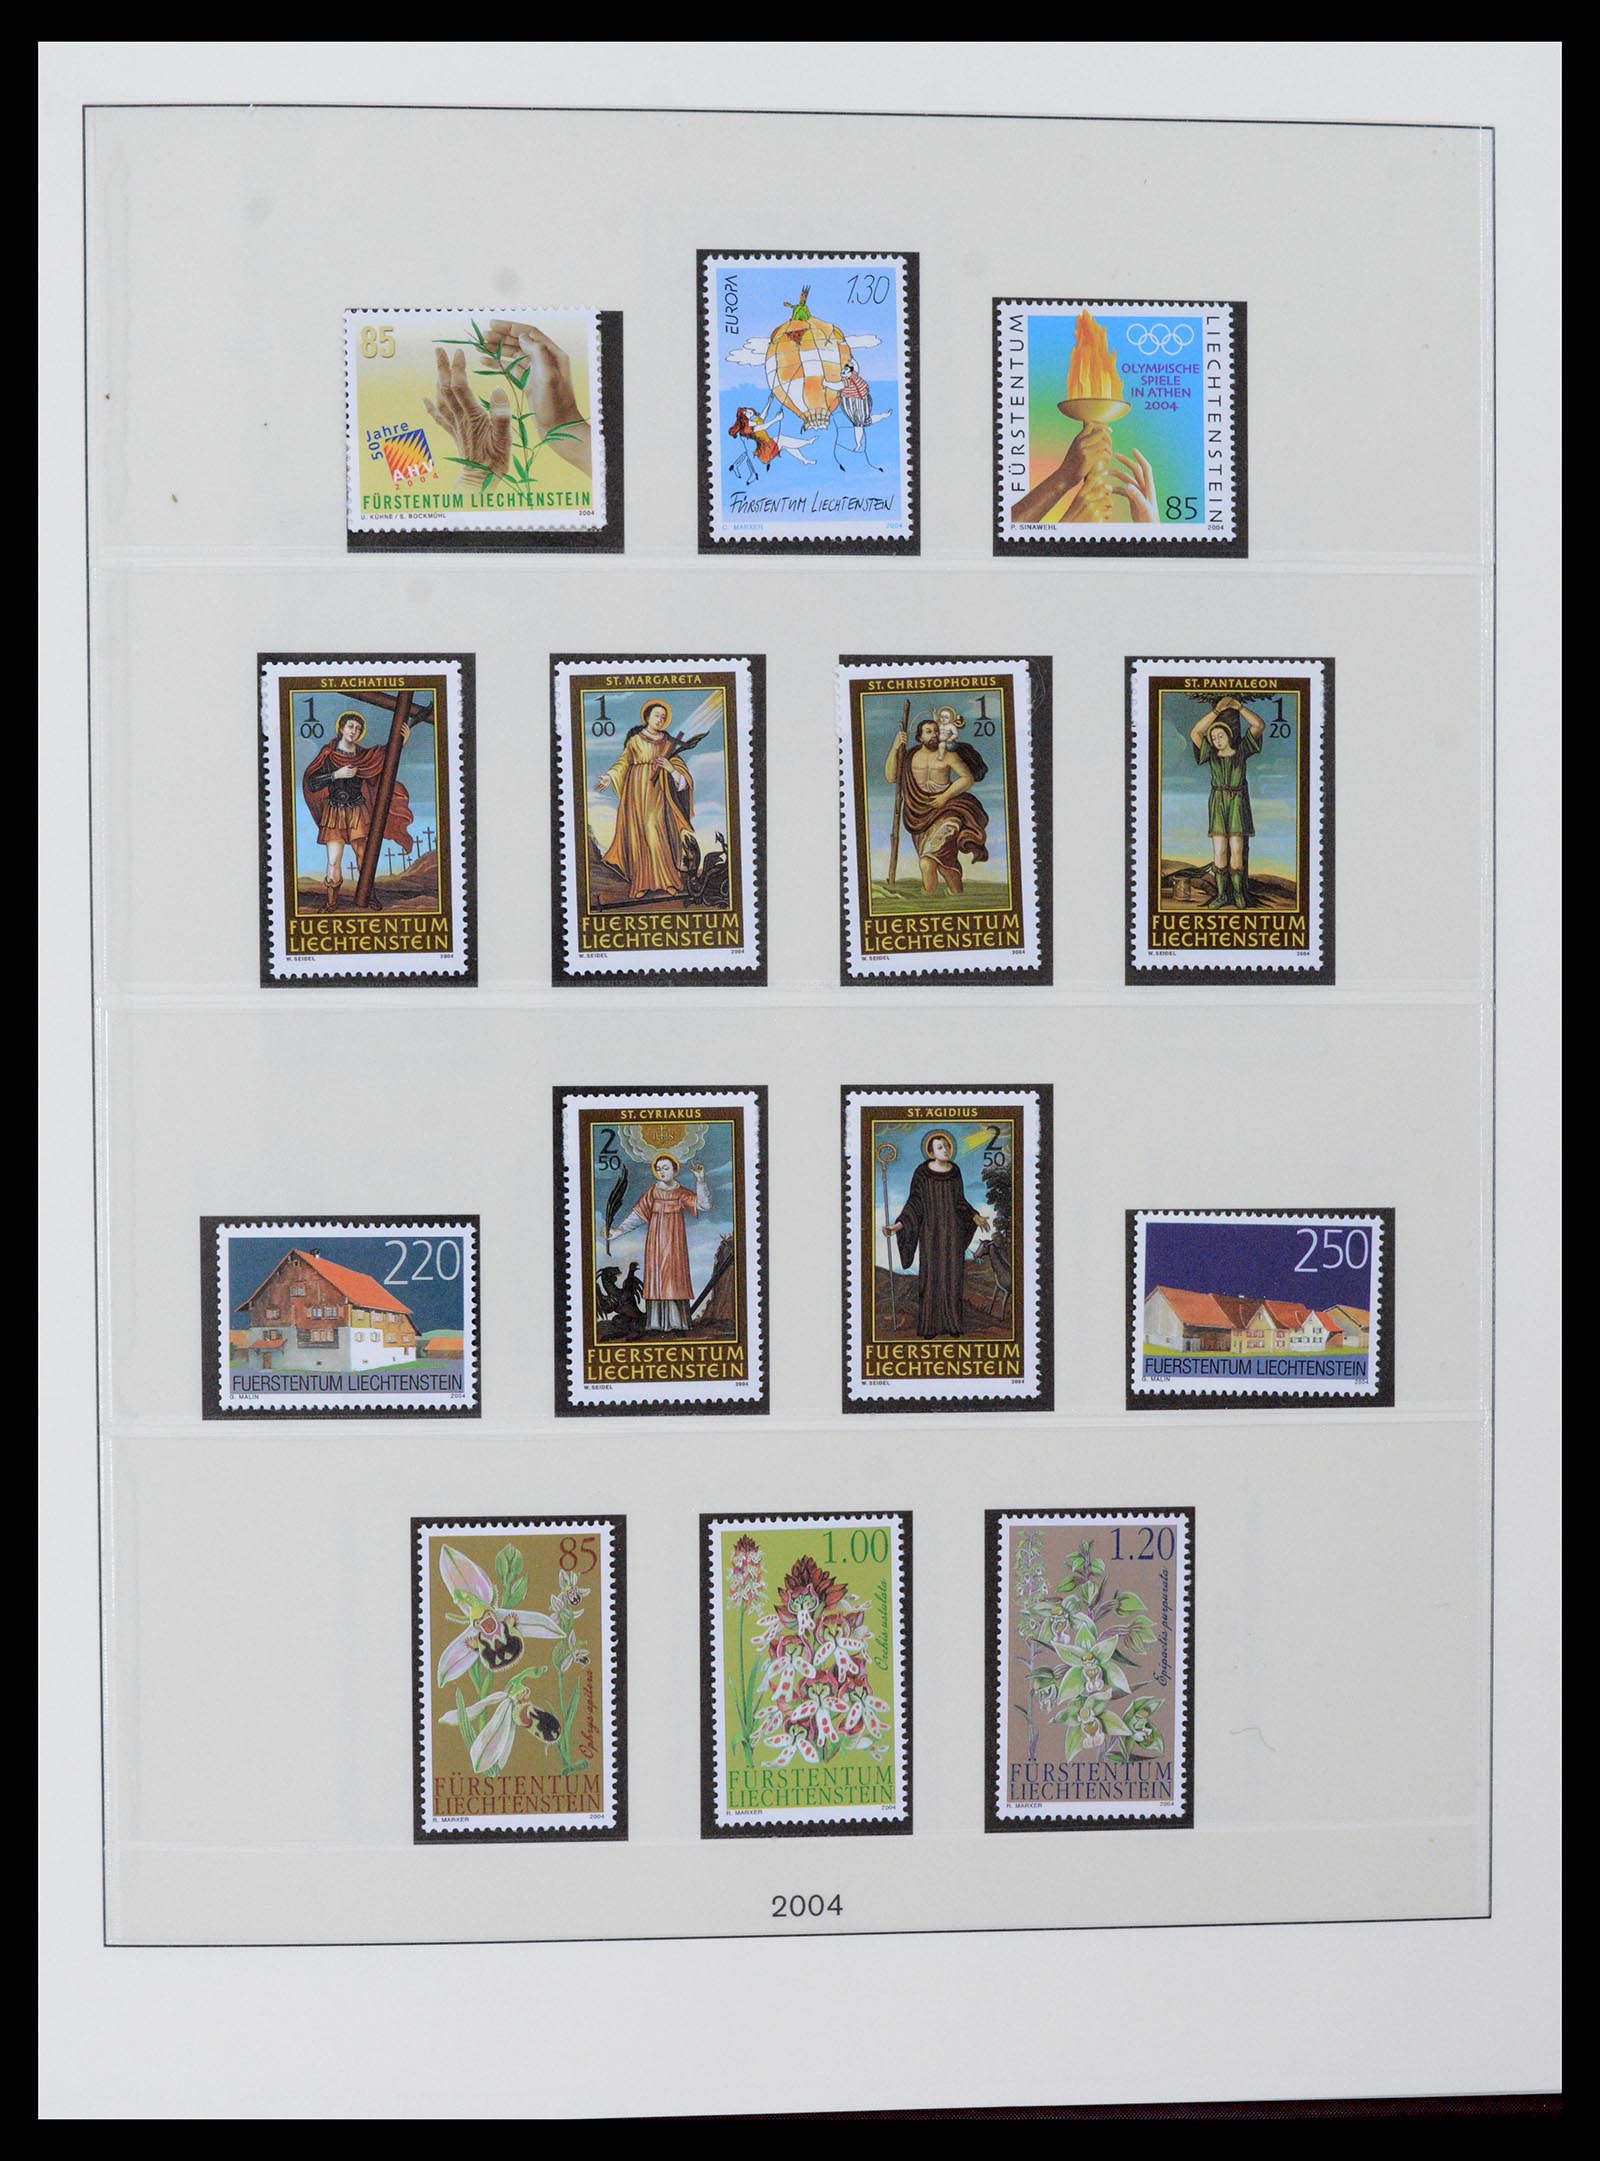 37295 136 - Stamp collection 37295 Liechtenstein 1912-2009.